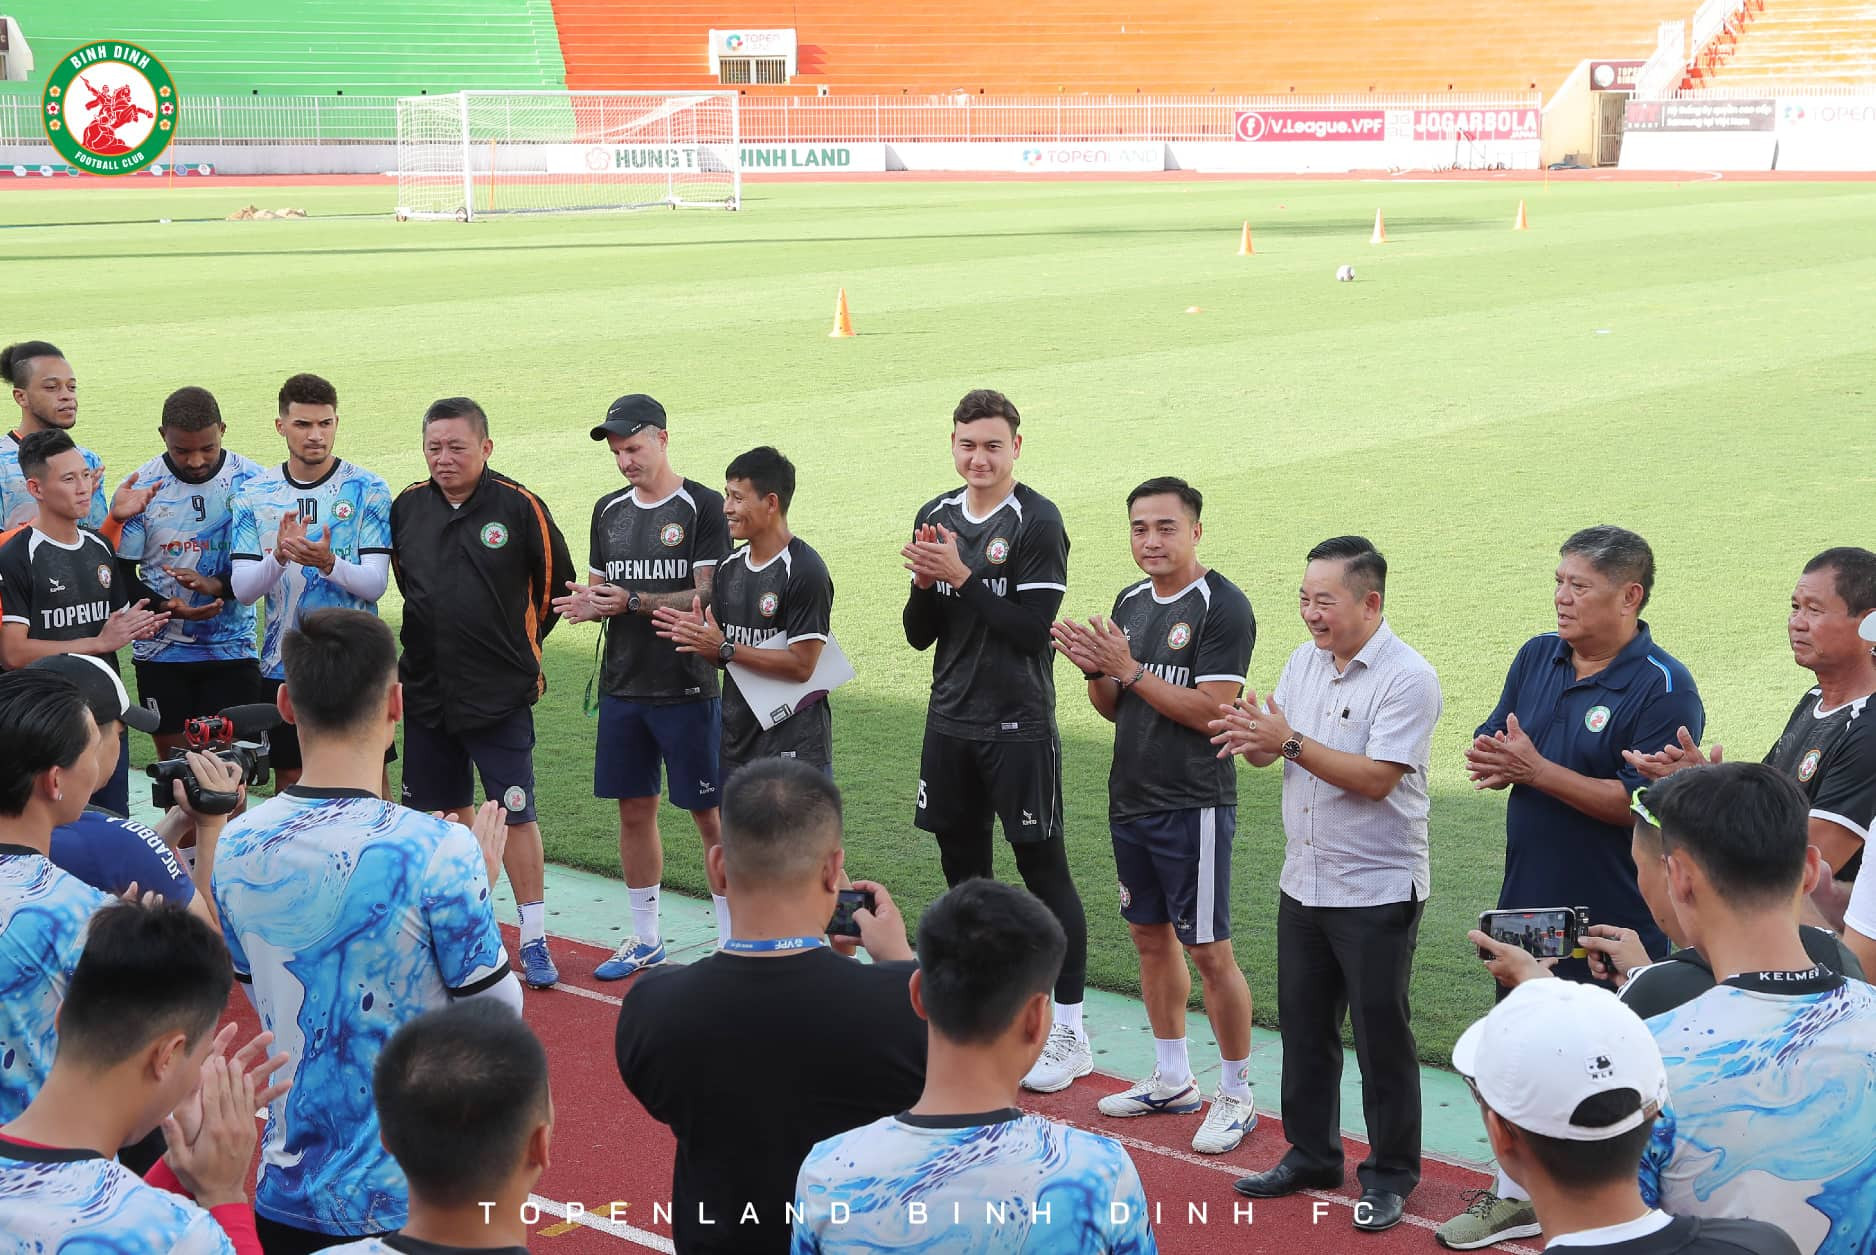 Phát biểu ra mắt các đồng đội, BHL trước buổi tập thủ môn của tuyển Việt Nam khẳng định sẽ nỗ lực hết sức để giúp Topenland Bình Định giành thành tích, kết quả tốt nhất ở mùa giải năm nay cũng như trong tương lai.